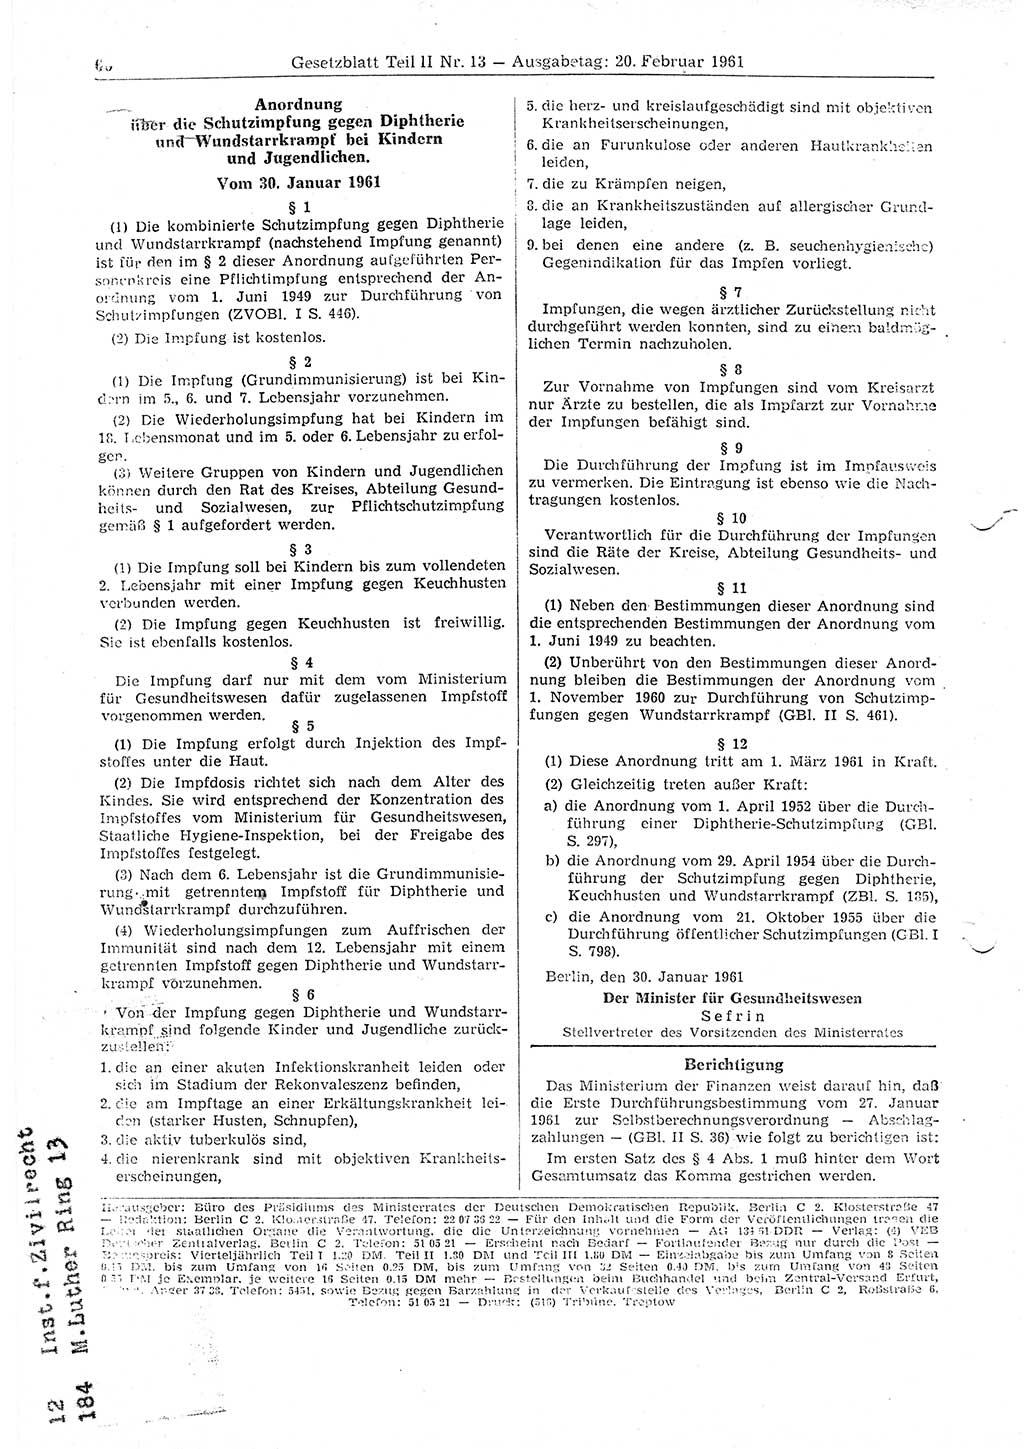 Gesetzblatt (GBl.) der Deutschen Demokratischen Republik (DDR) Teil ⅠⅠ 1961, Seite 60 (GBl. DDR ⅠⅠ 1961, S. 60)